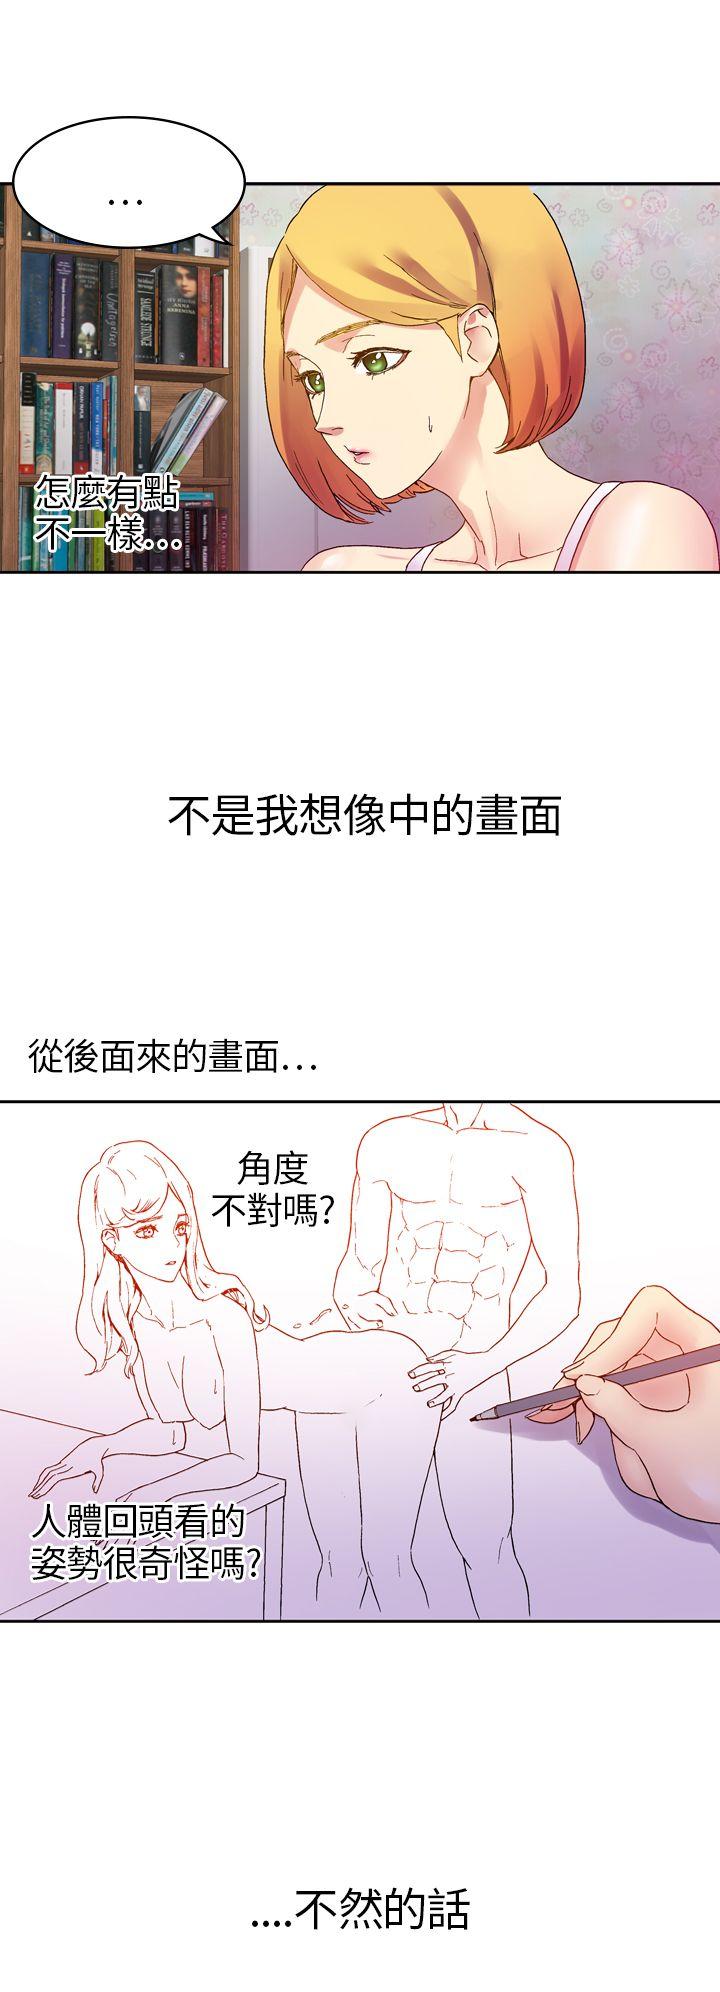 韩国污漫画 幻想中的她(完結) 第10话 20